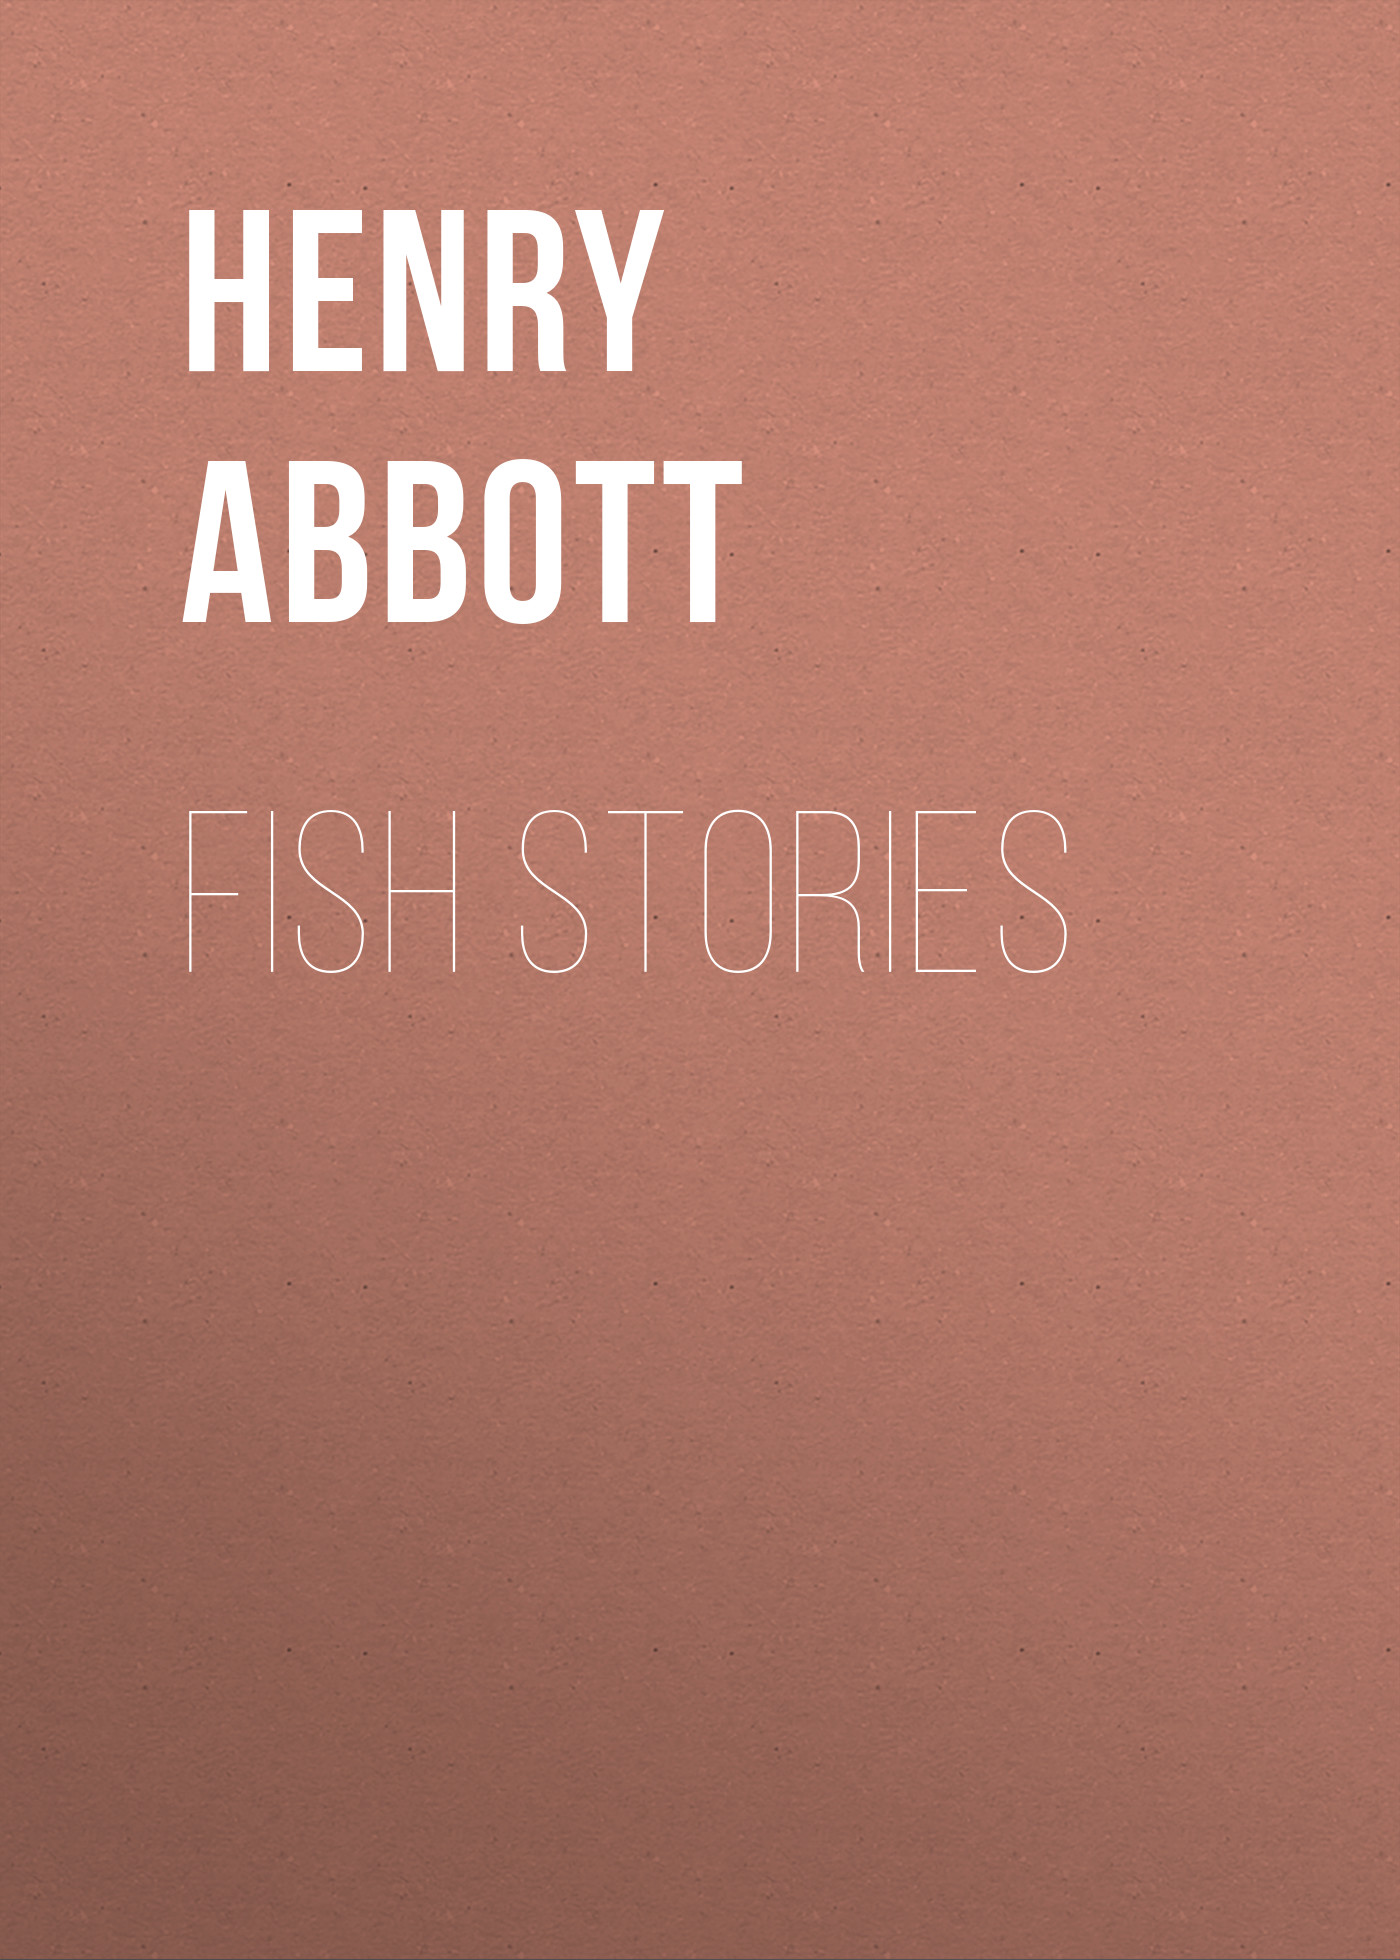 Книга Fish Stories из серии , созданная Henry Abbott, может относится к жанру Зарубежная старинная литература, Зарубежная классика. Стоимость электронной книги Fish Stories с идентификатором 24173268 составляет 5.99 руб.